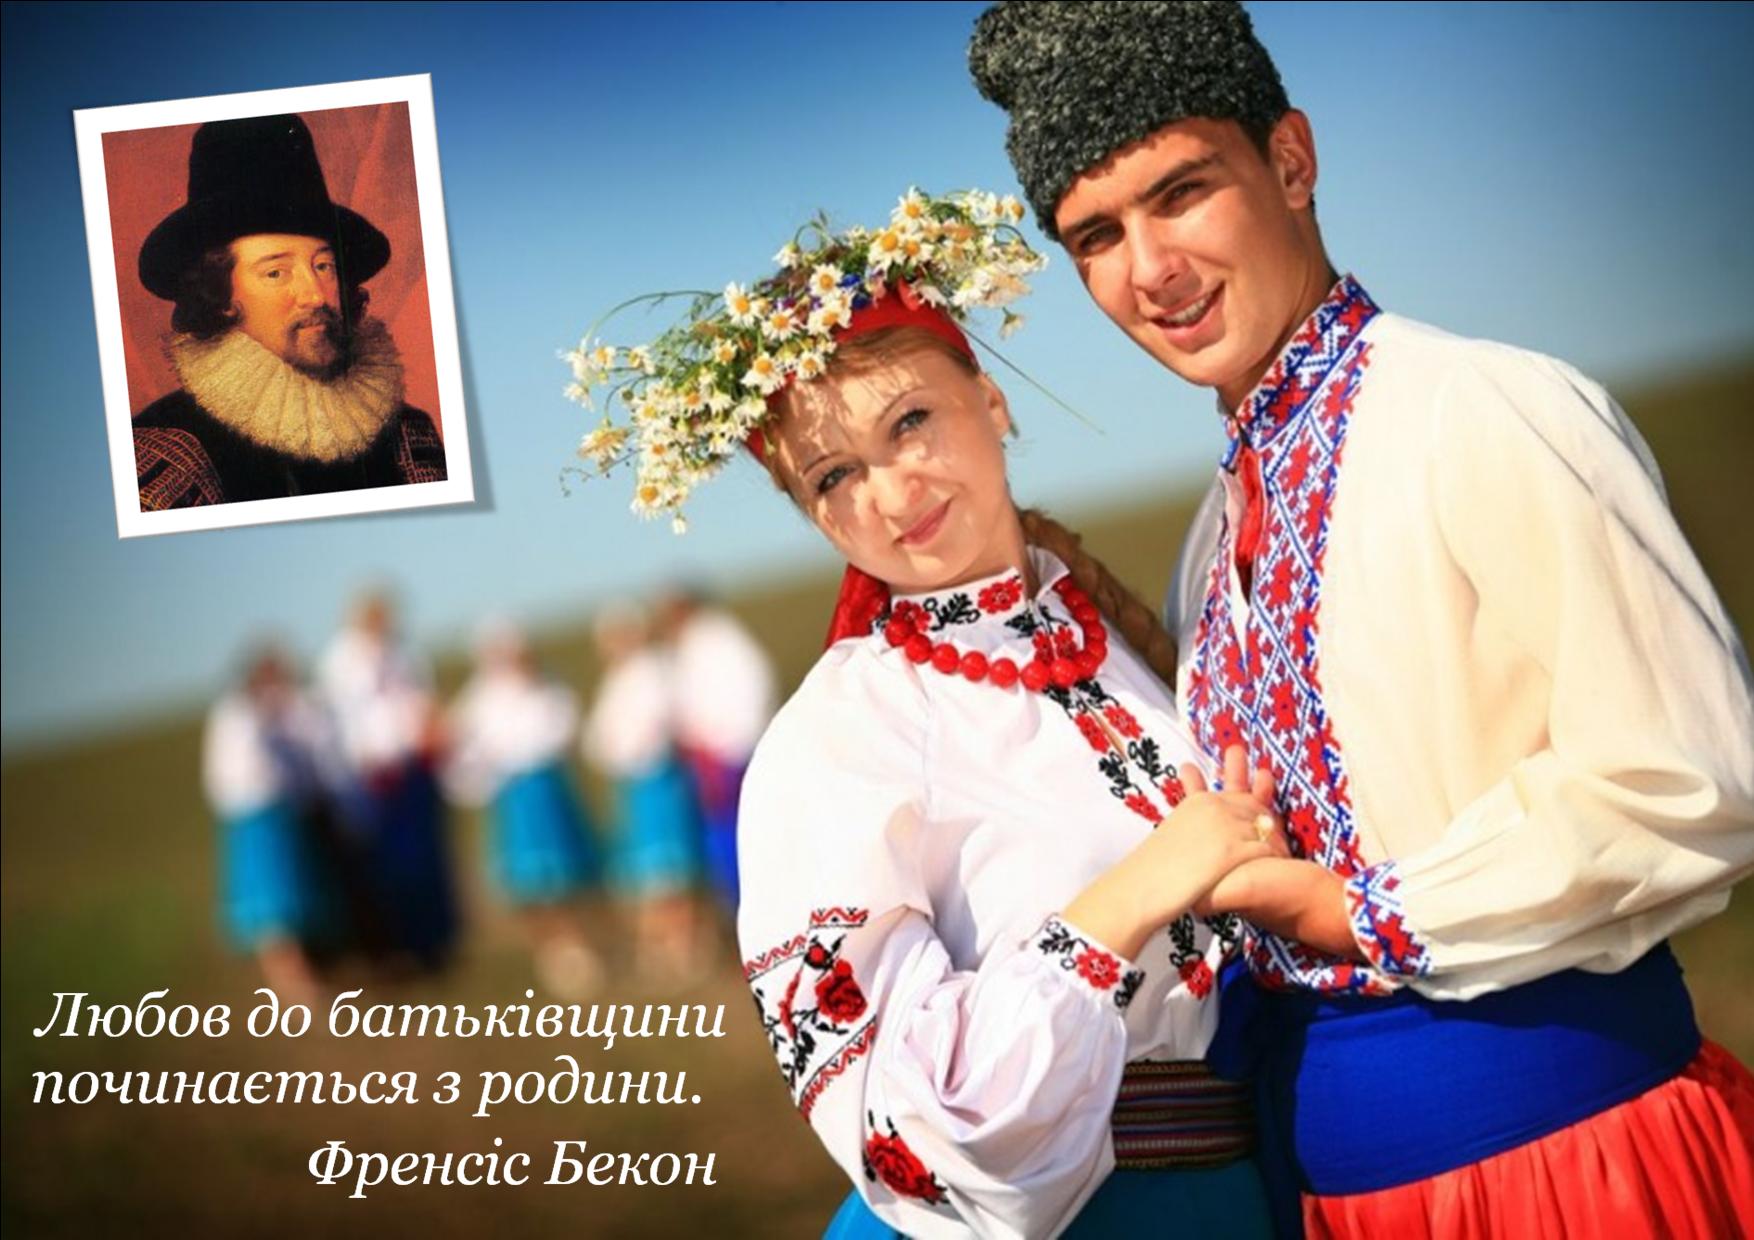 Северные украинцы. Национальный костюм украинцев. Украинский костюм. Люди в национальных костюмах. Русский национальный костюм.